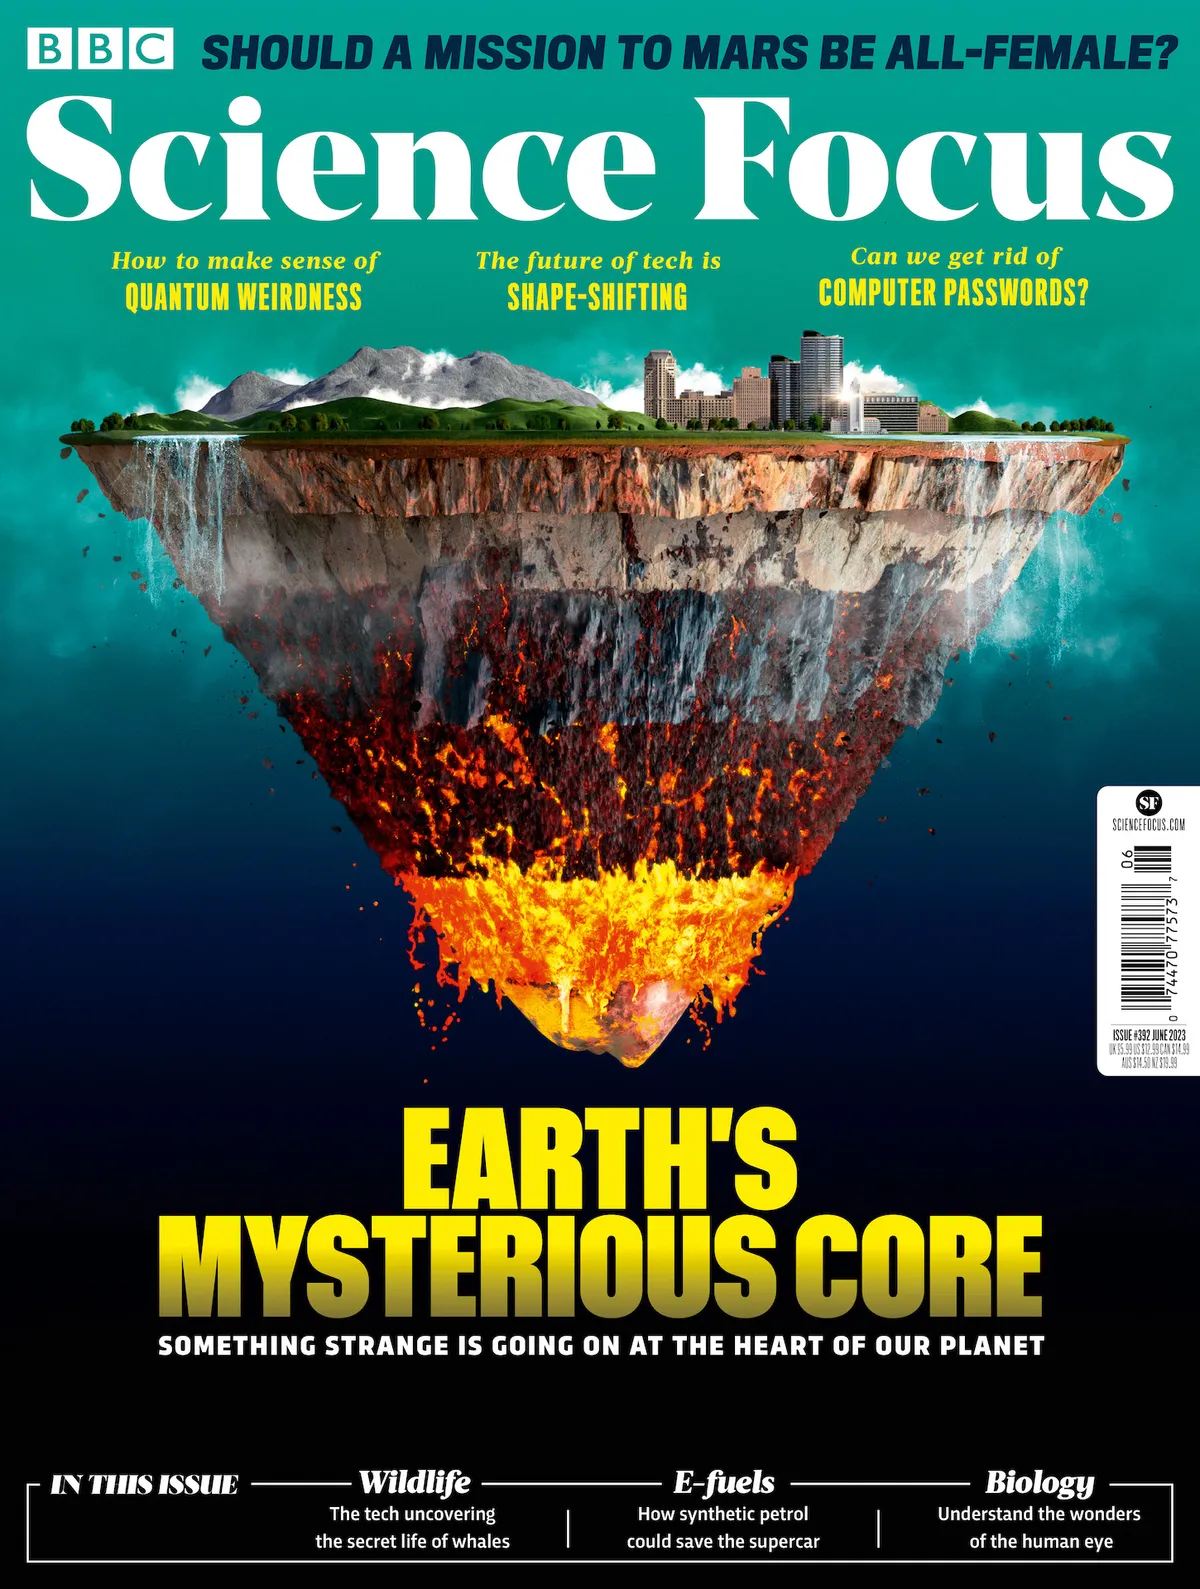 Issue 392 of BBC Science Focus magazine